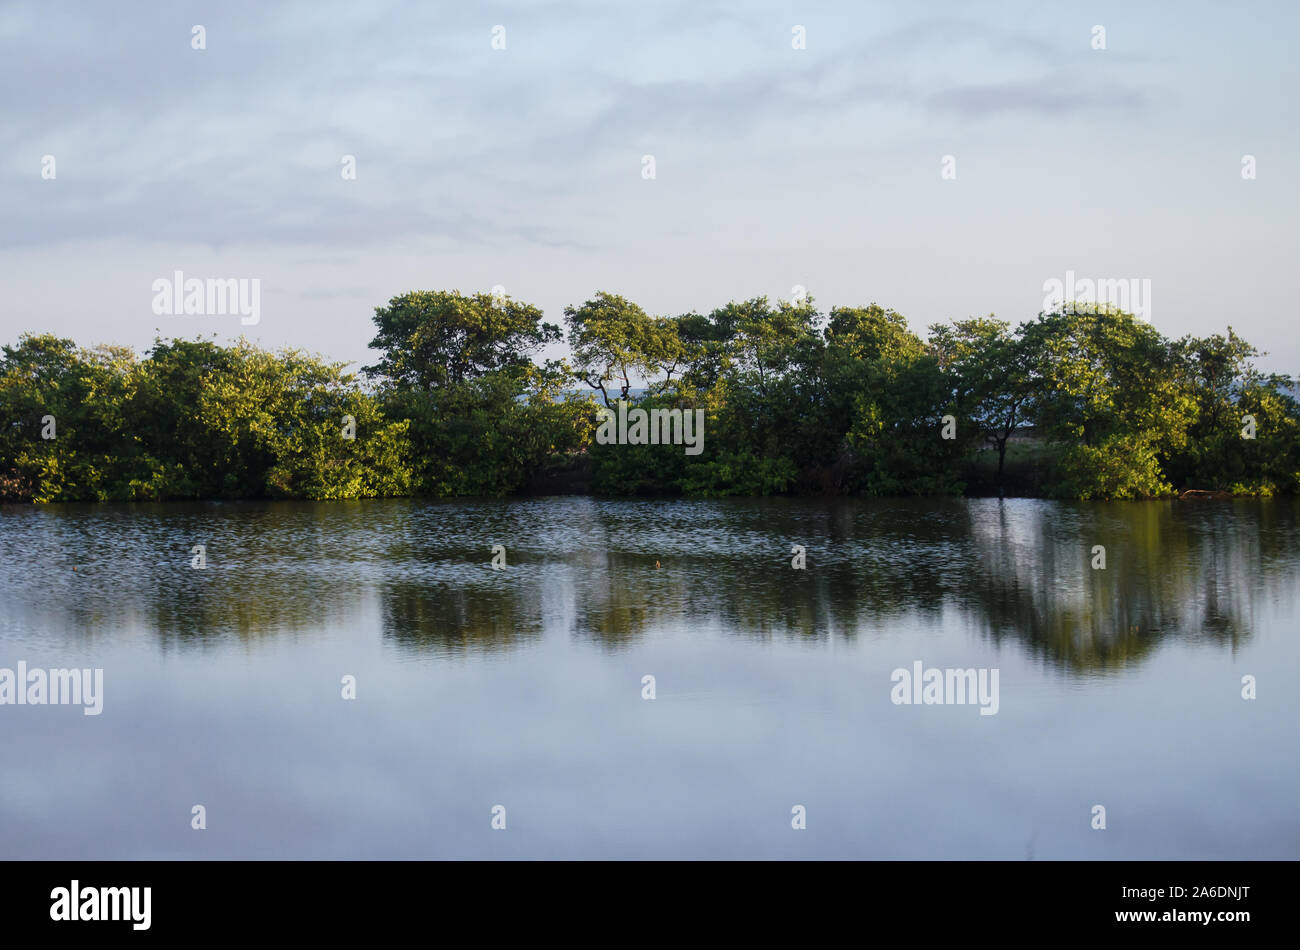 Mattina in scena "Cienega Grande de Santa Marta' con alberi di mangrovie che riflette in acqua tranquilla Foto Stock